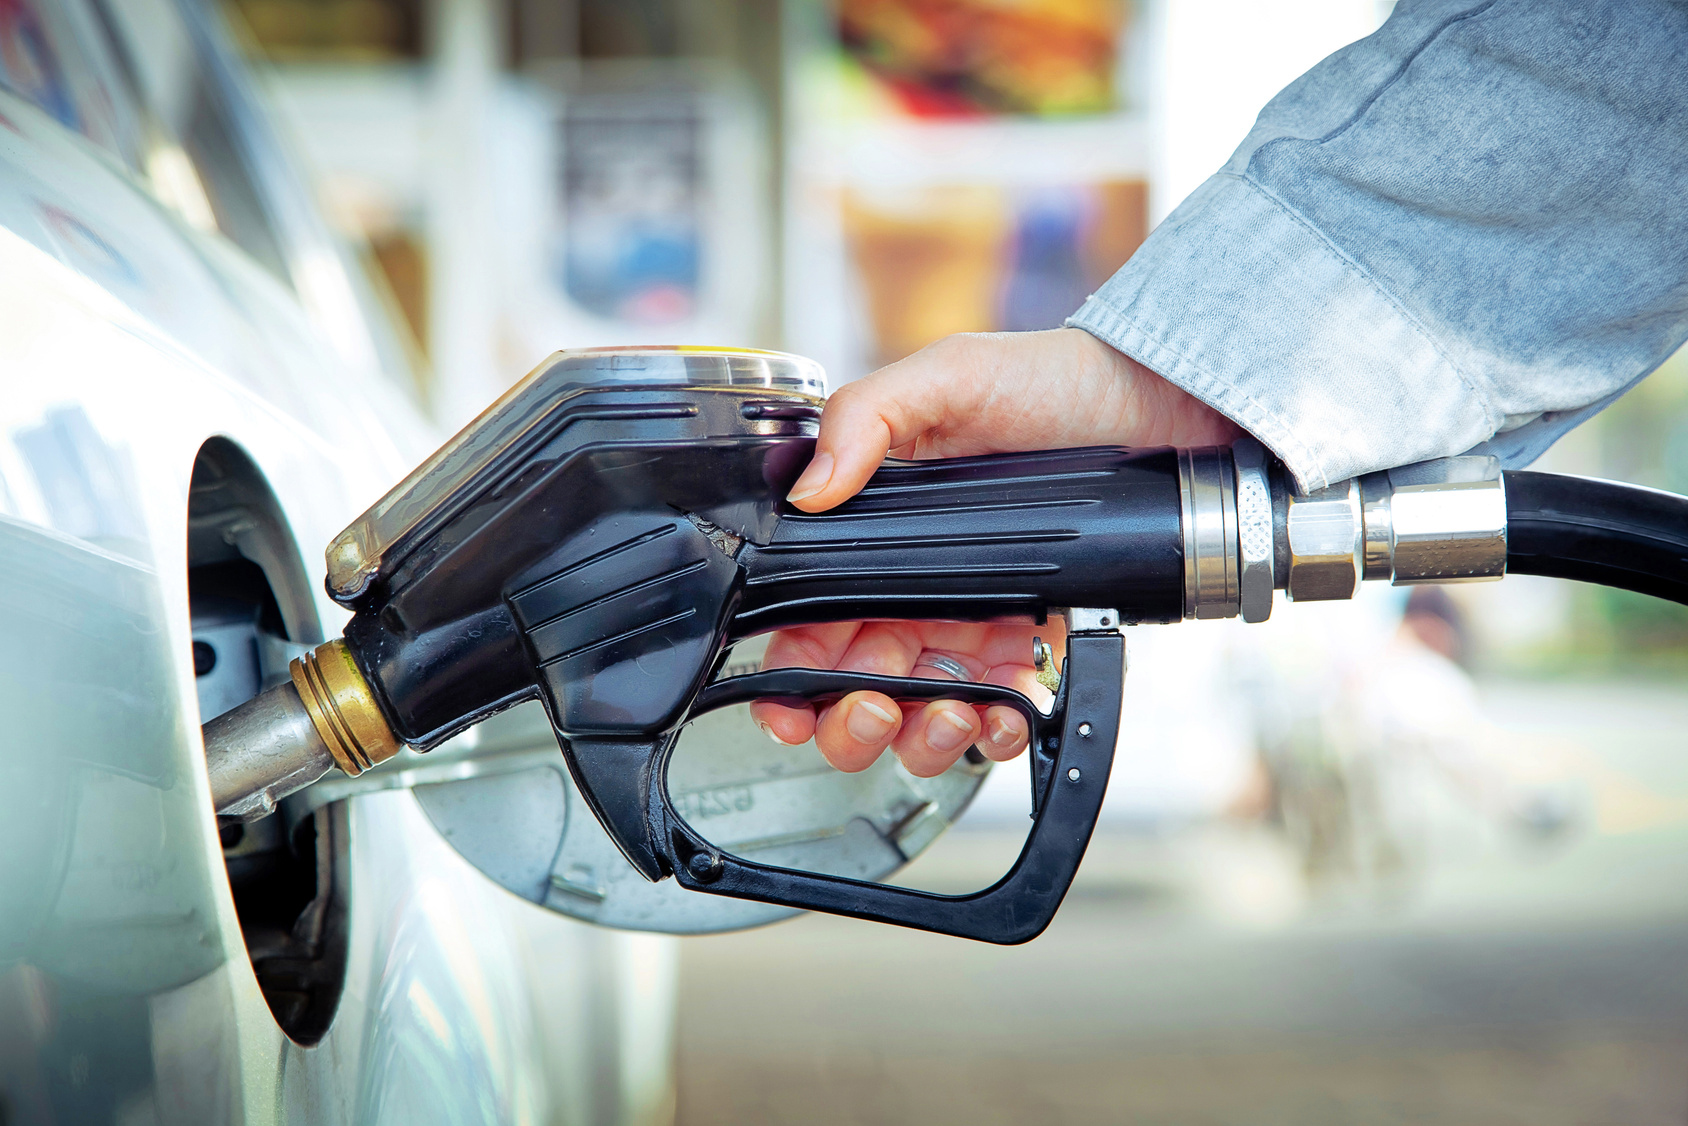 Tankstelle verwechselt Benzin und Diesel